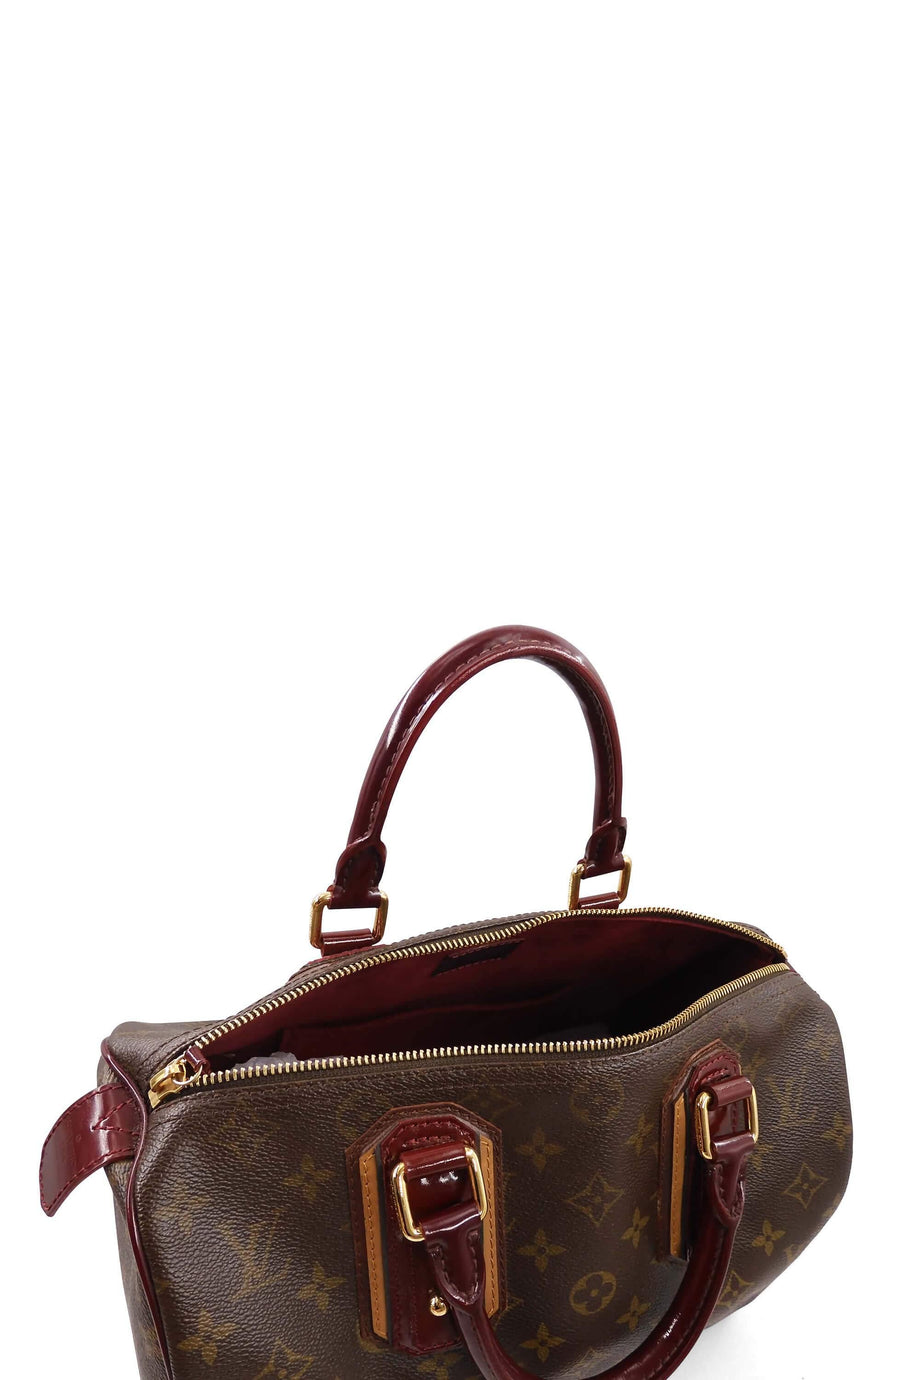 Louis Vuitton Speedy Handbag Limited Edition Monogram Mirage 30 Brown  135422162